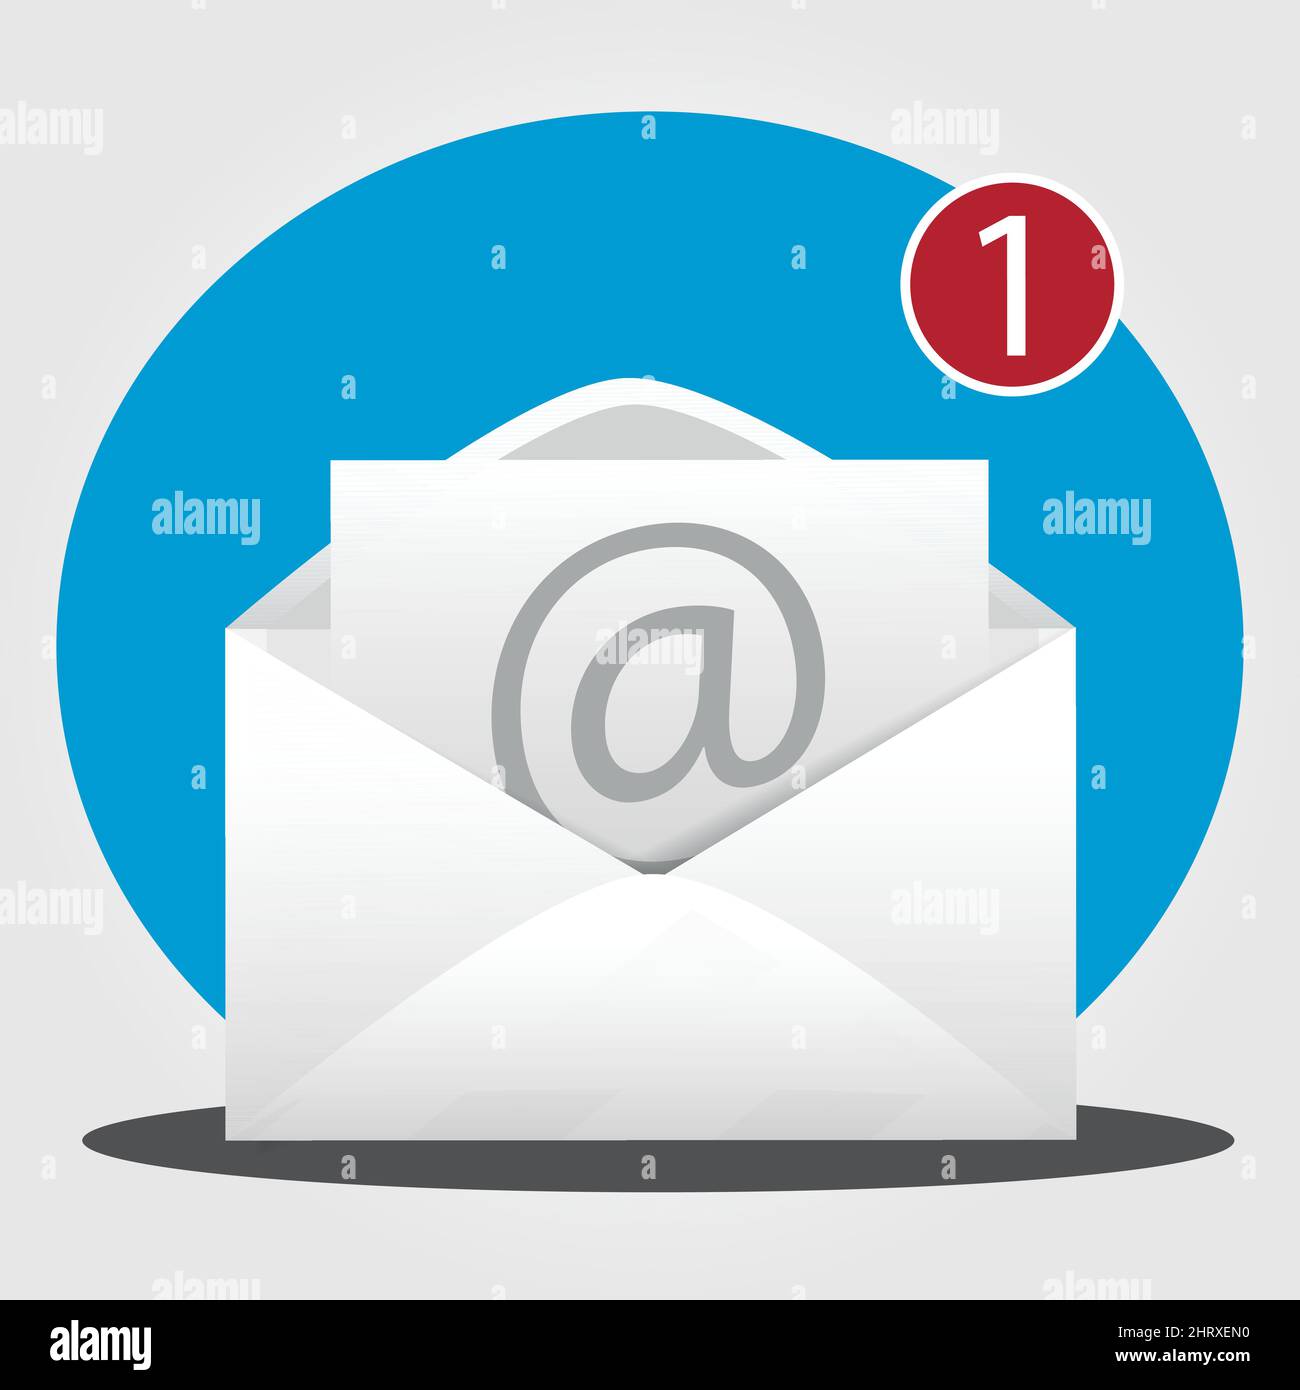 E-Mail-Symbol mit einem offenen Umschlag und einer Nummer eins, die darauf hinweist, dass Sie eine neue Nachricht erhalten haben Stock Vektor